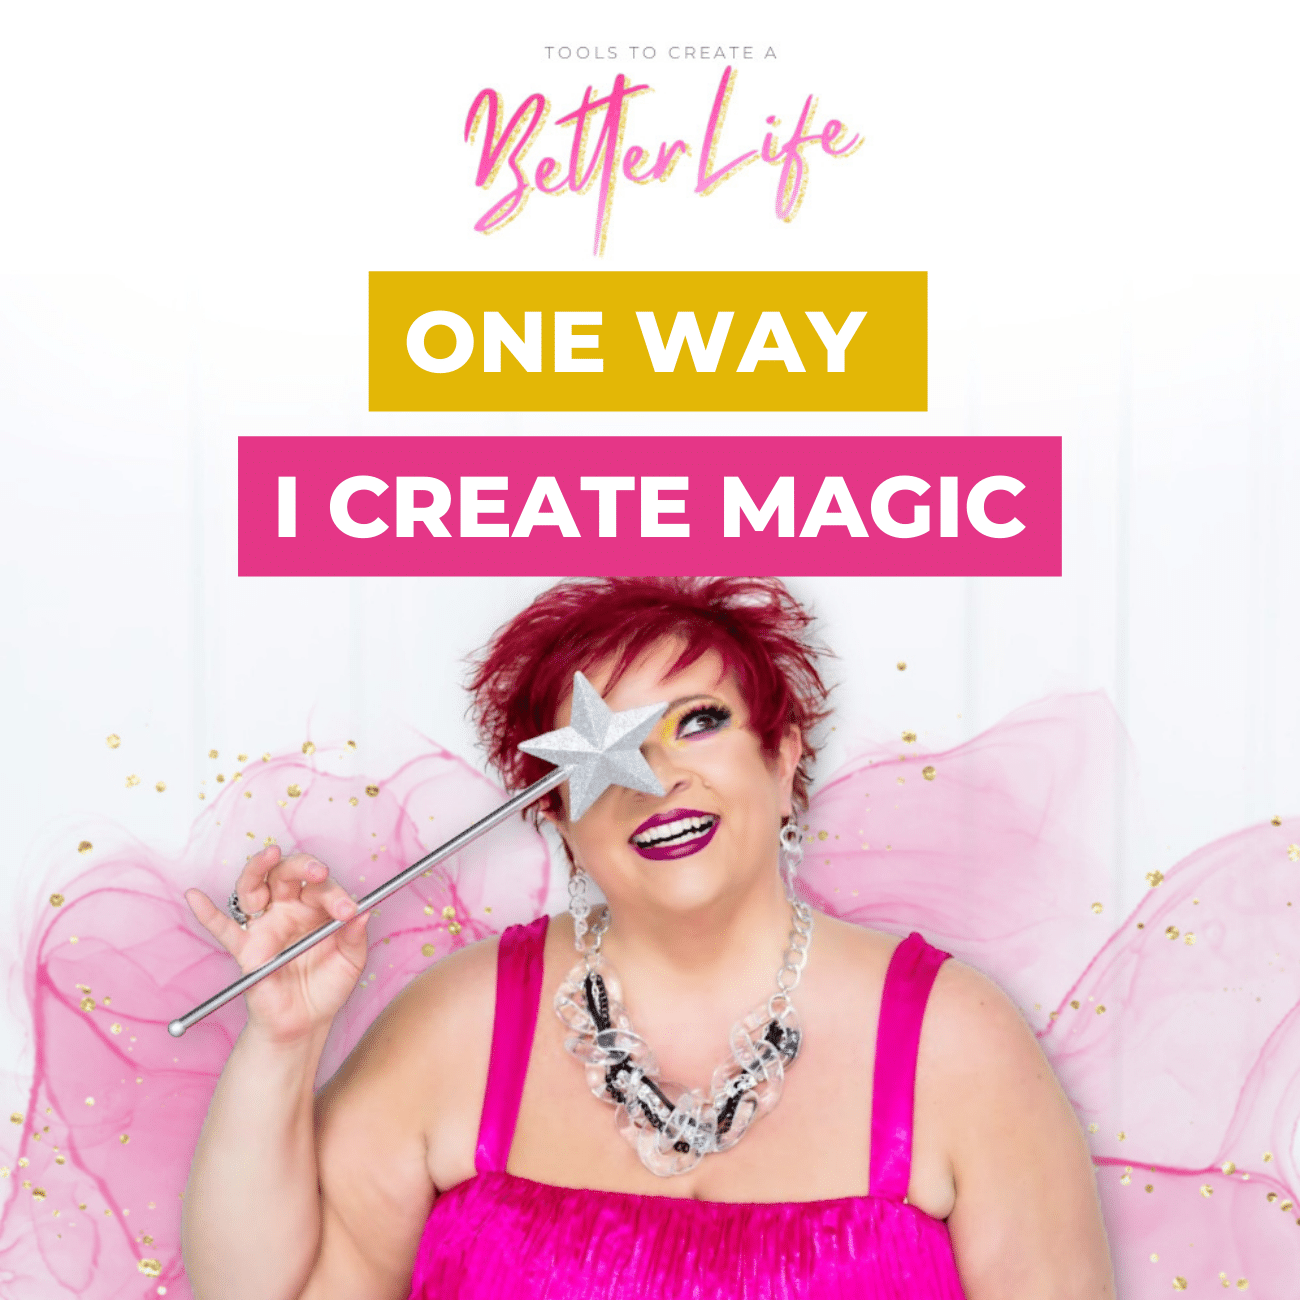 One Way I Create Magic